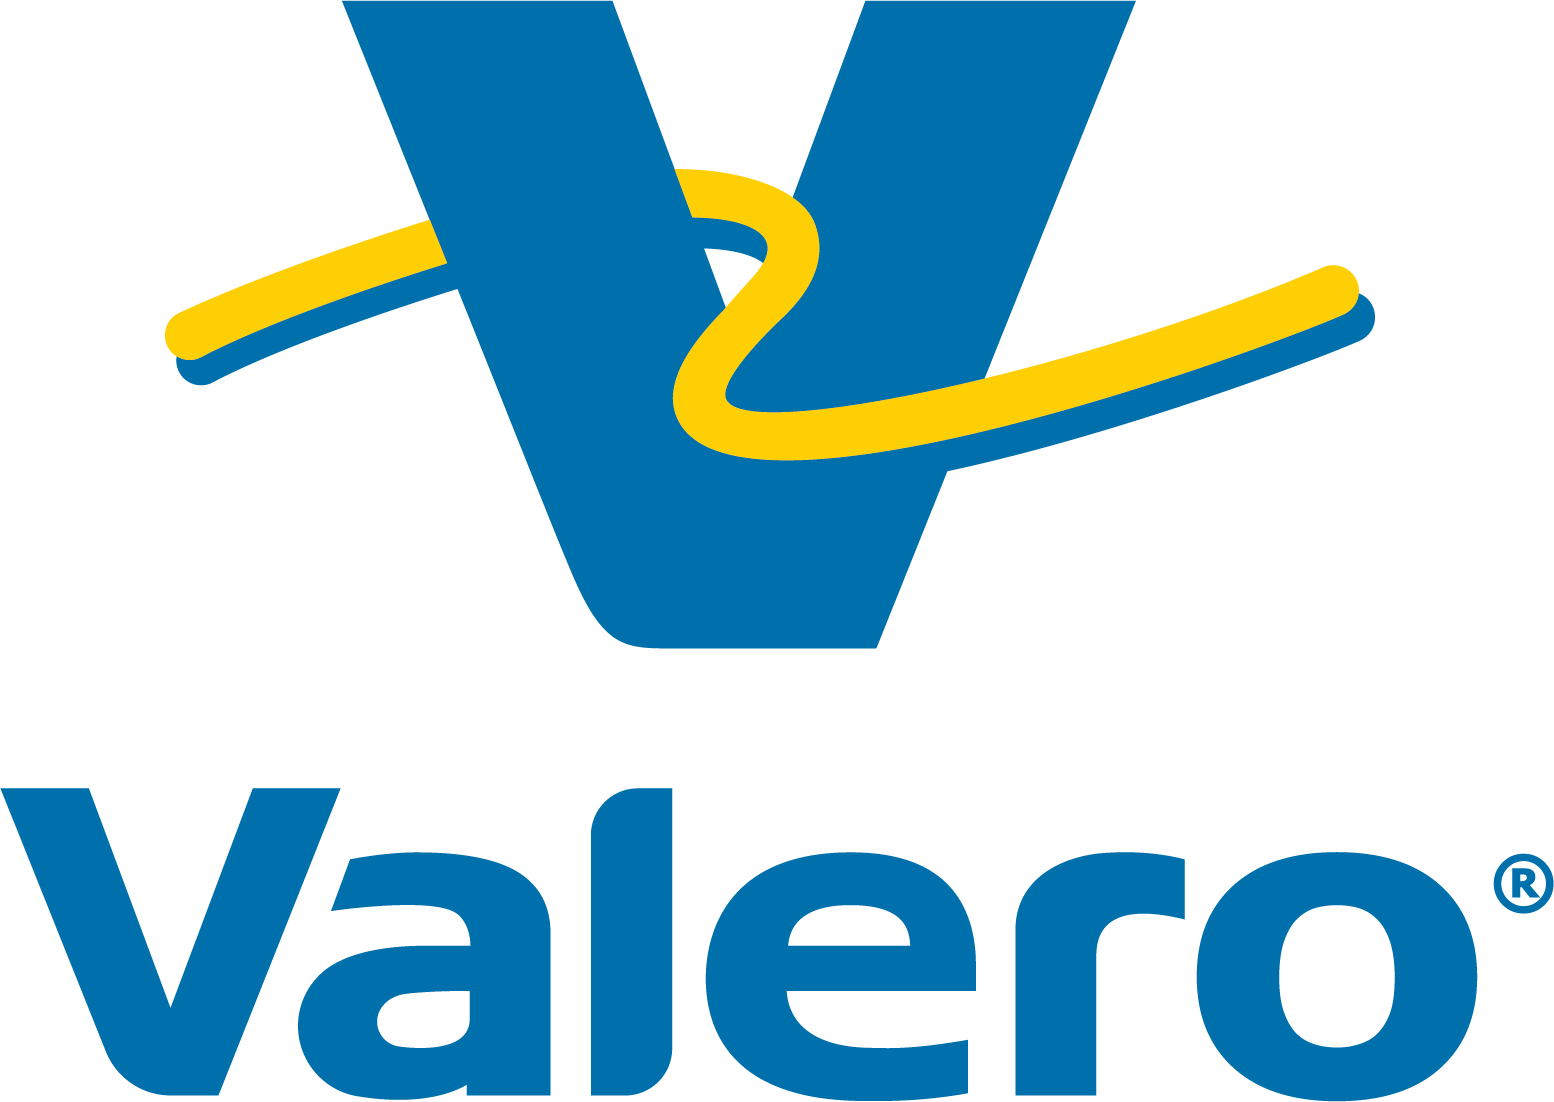 Valero Marketing & Supply logo